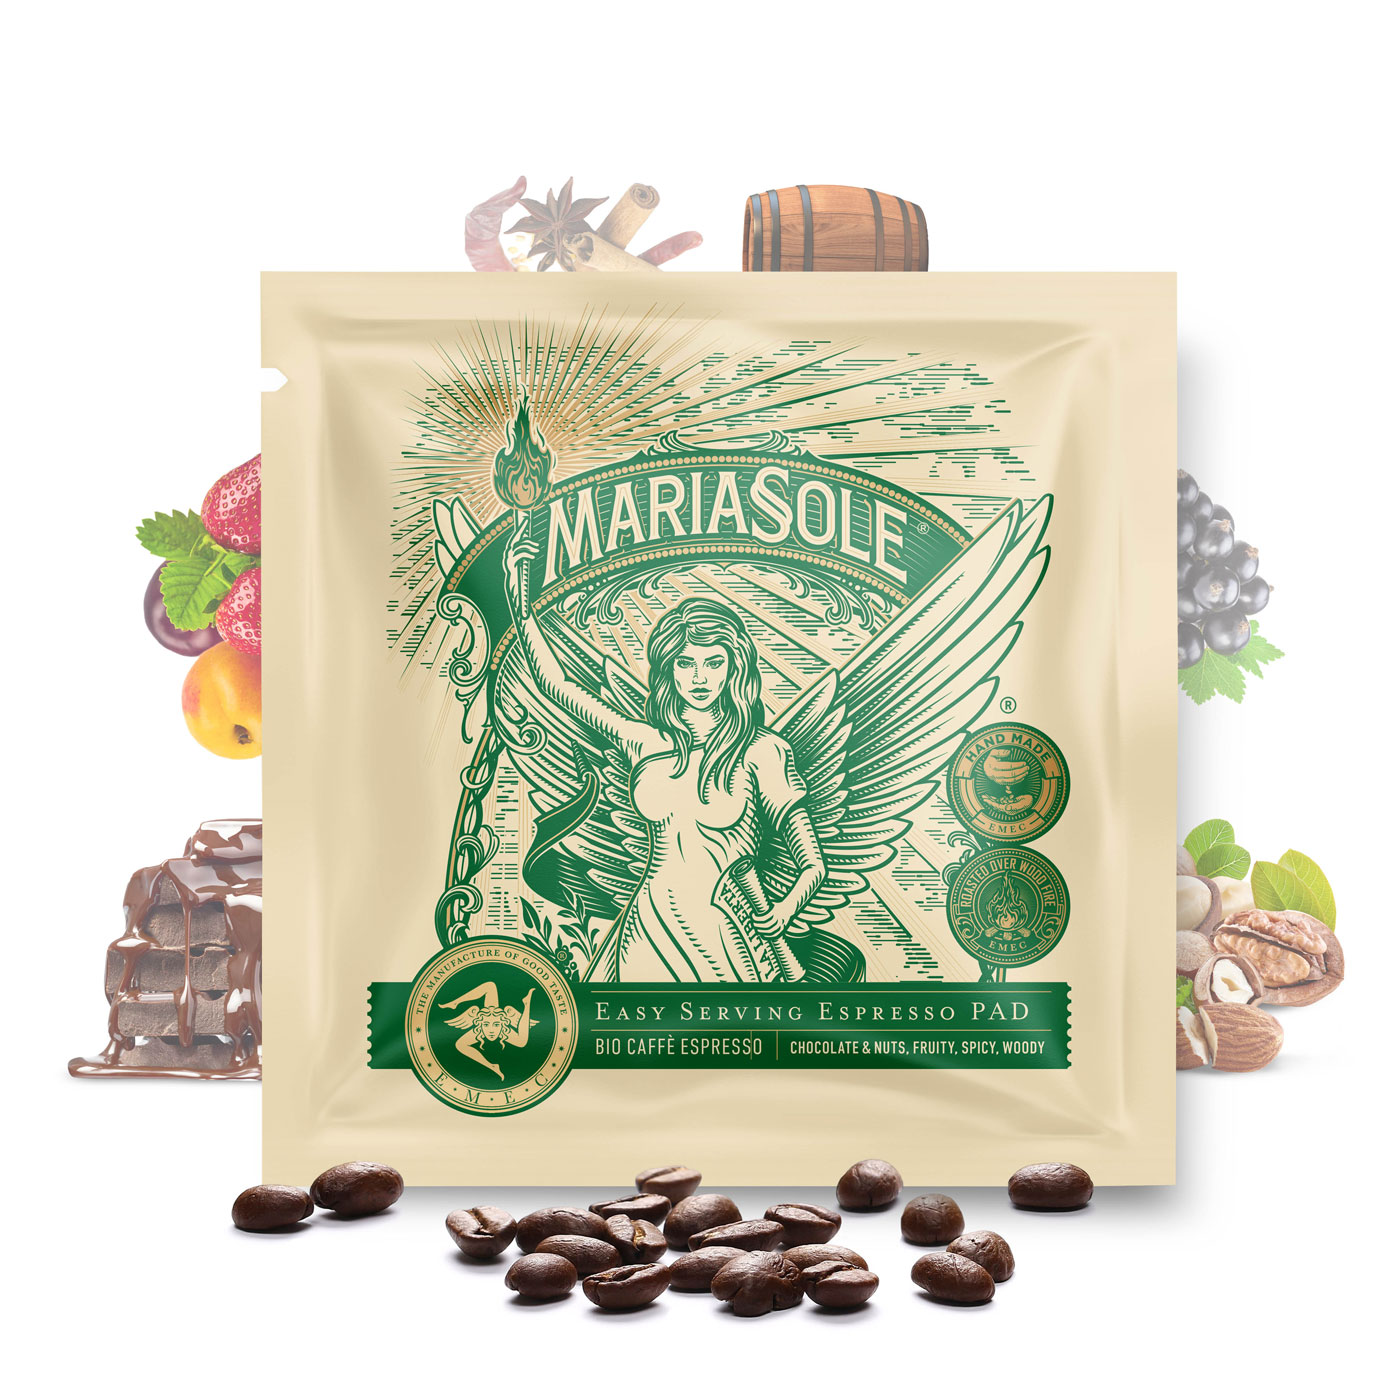 MARIASOLE - BIO Caffè Espresso - E.S.E Pads LUNGO